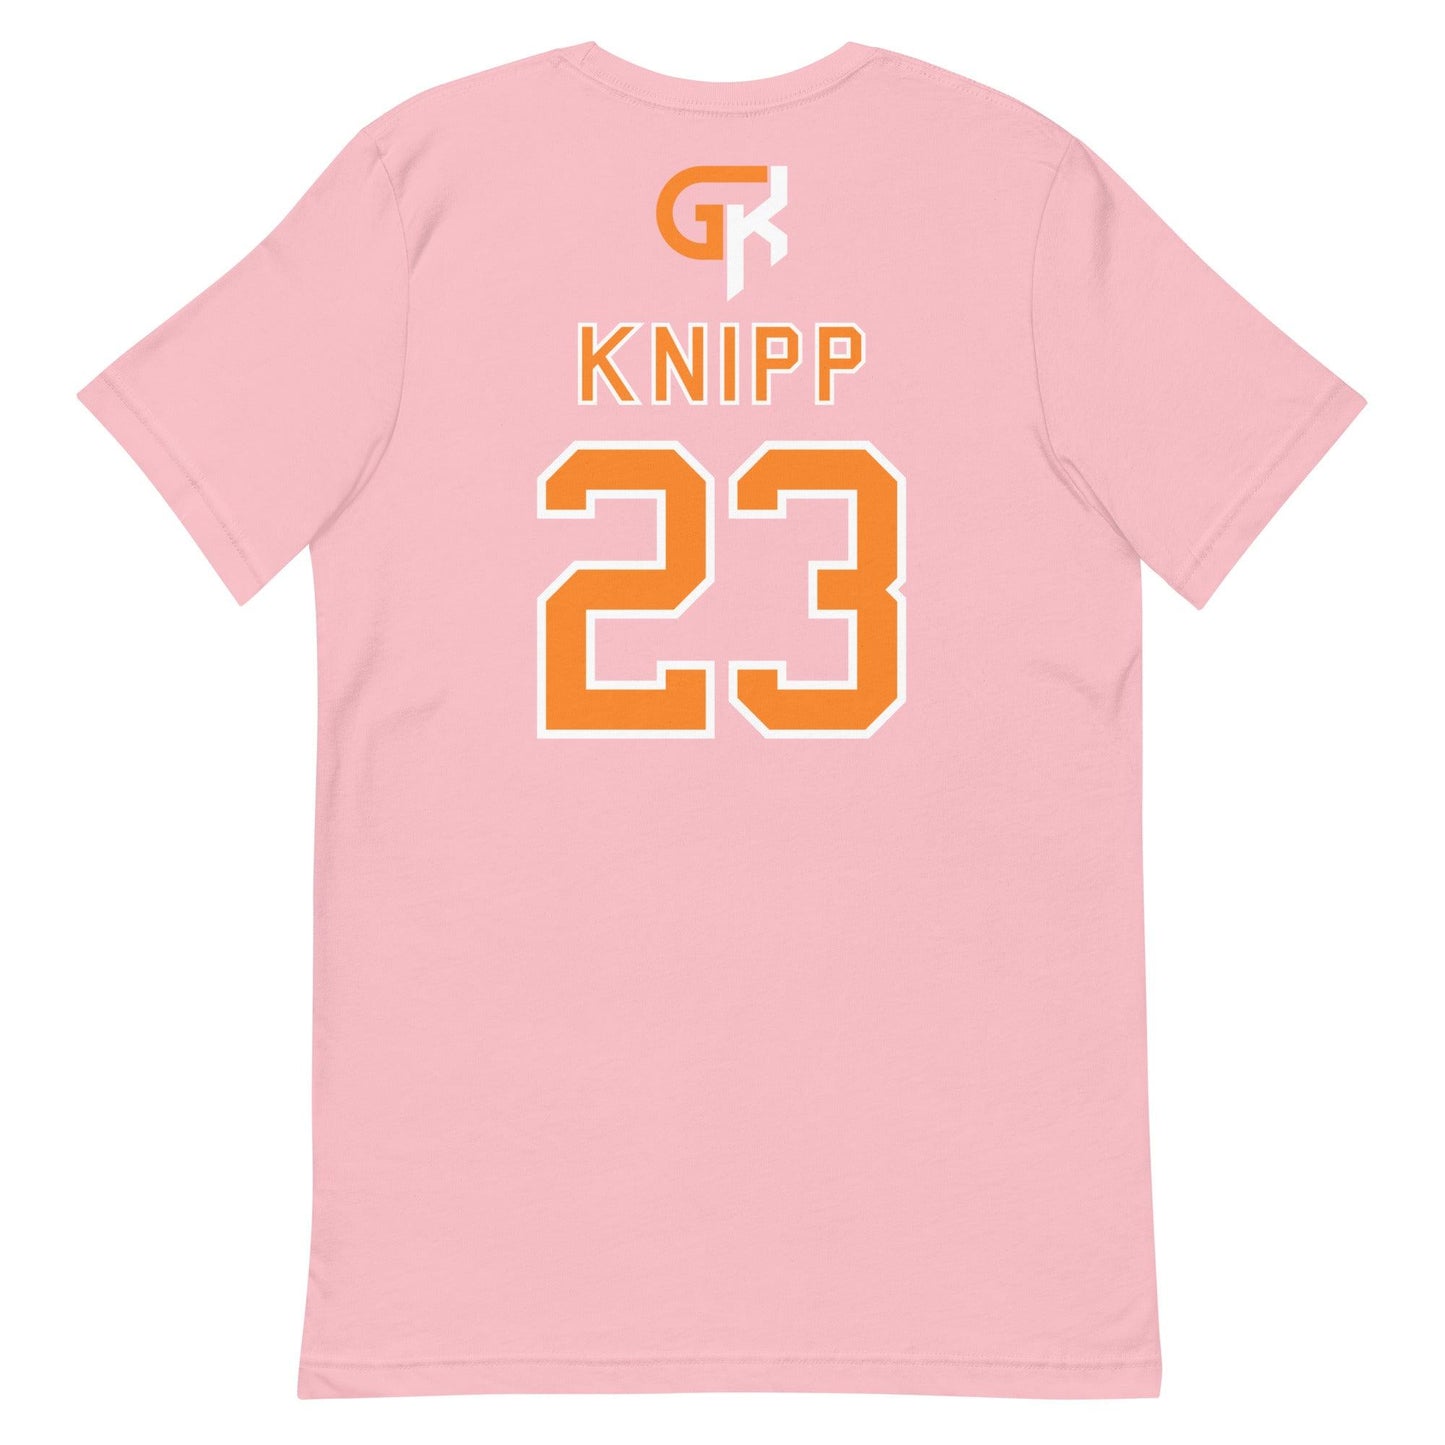 Grant Knipp "Jersey" t-shirt - Fan Arch